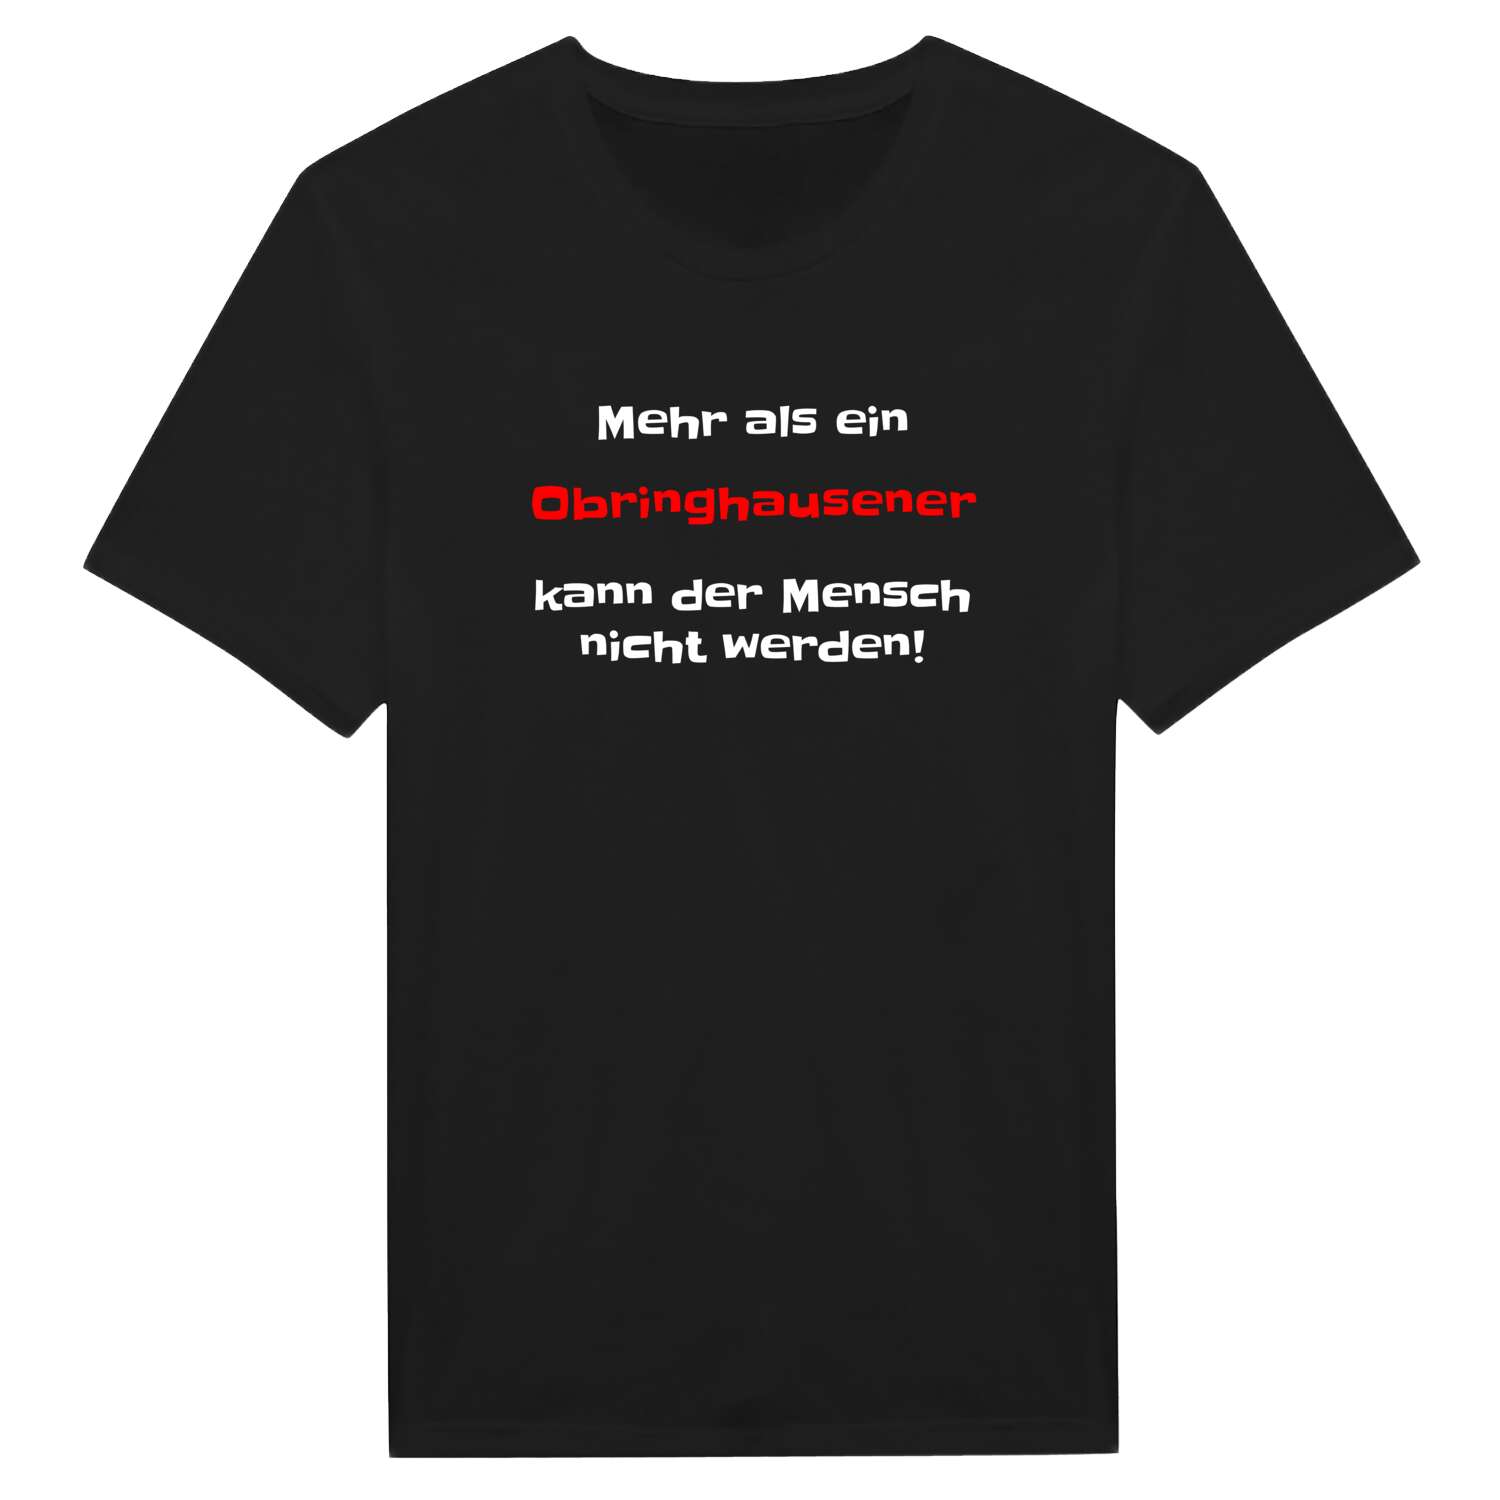 Obringhausen T-Shirt »Mehr als ein«